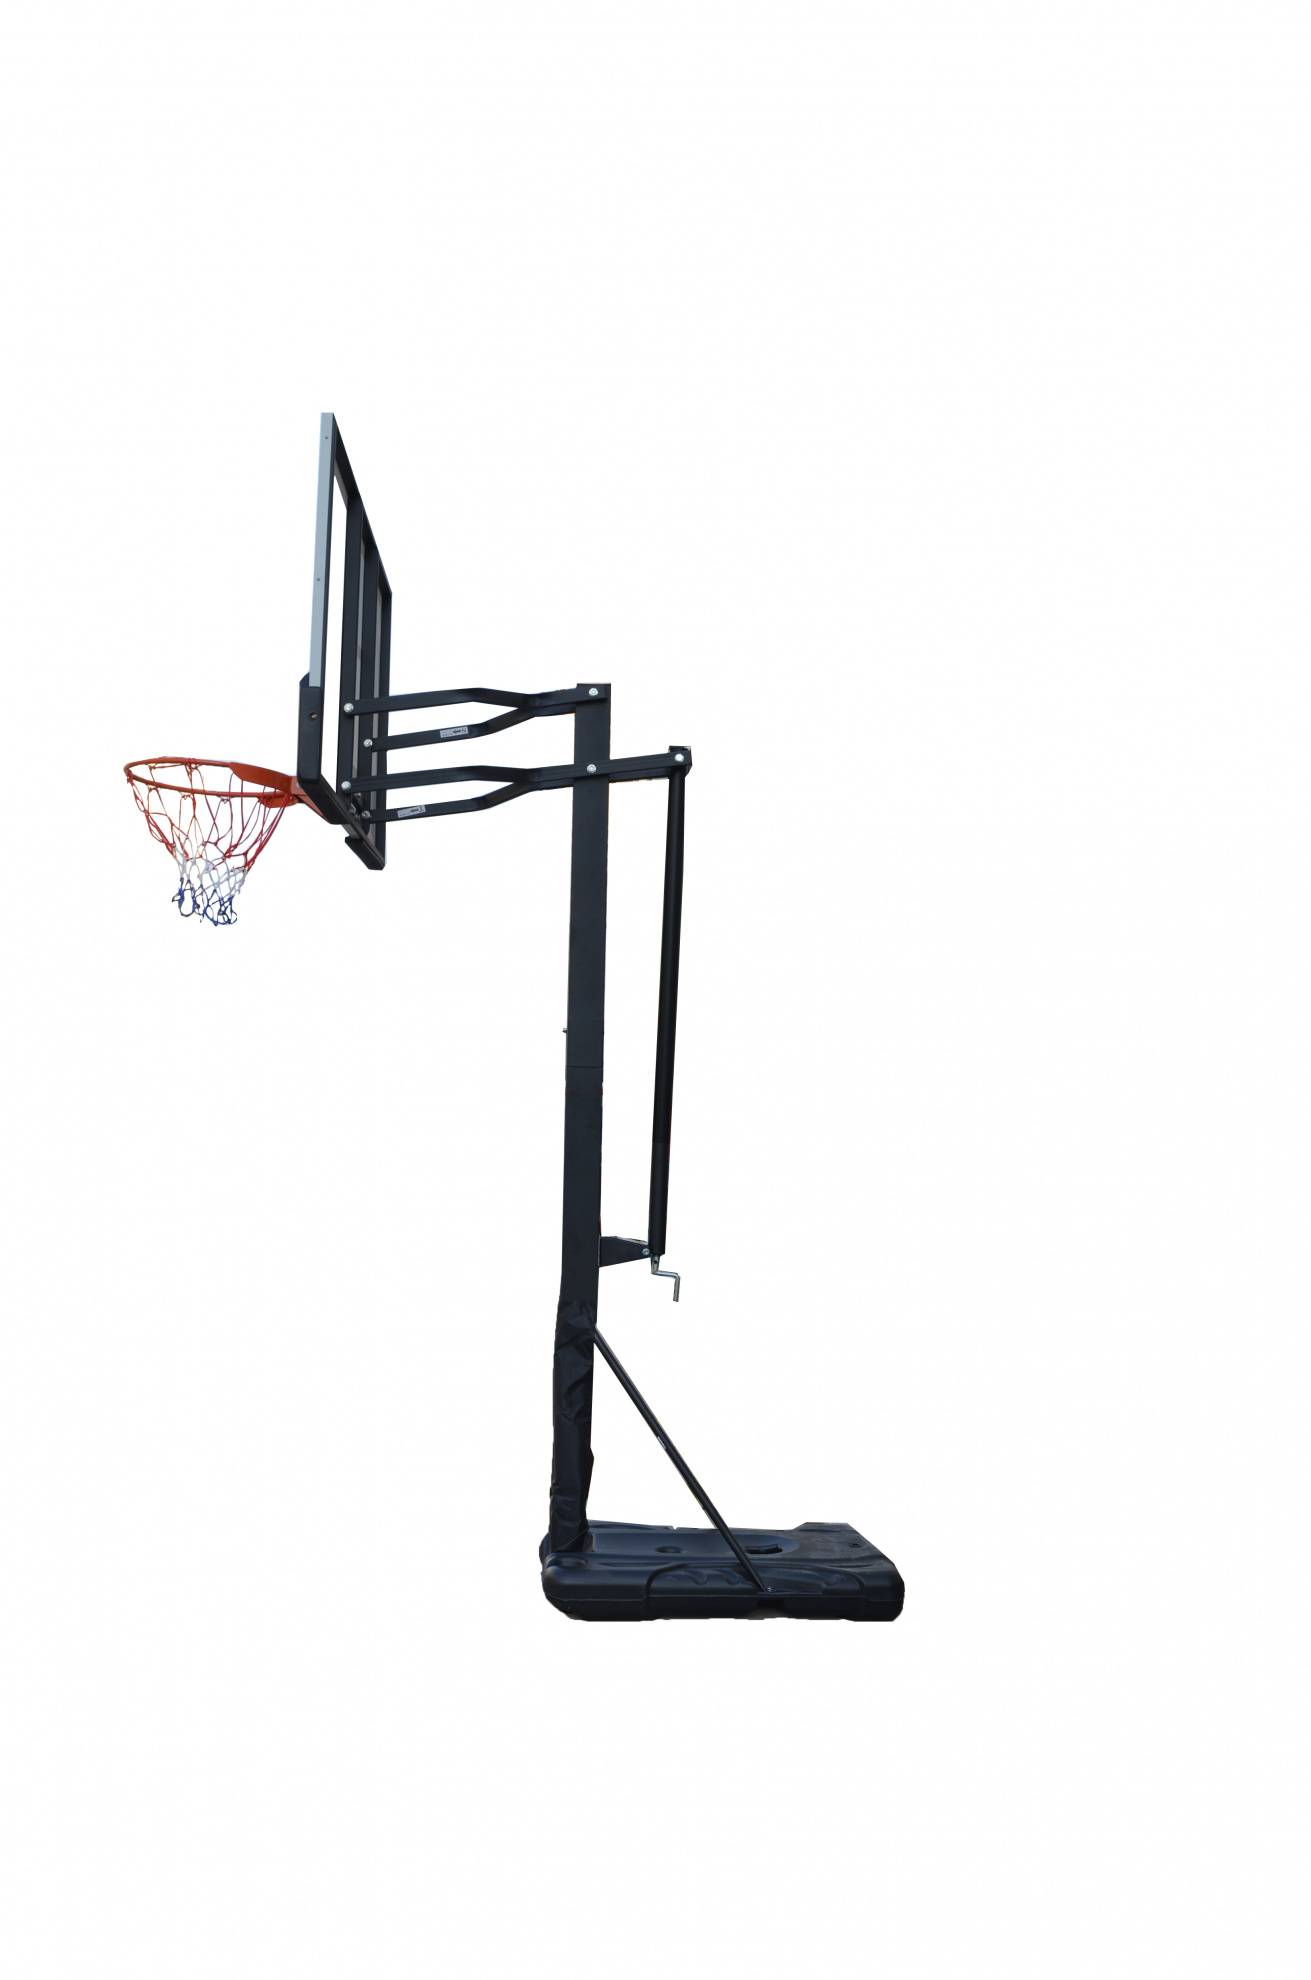 Мобильная баскетбольная стойка Proxima S023 — 60″, поликарбонат